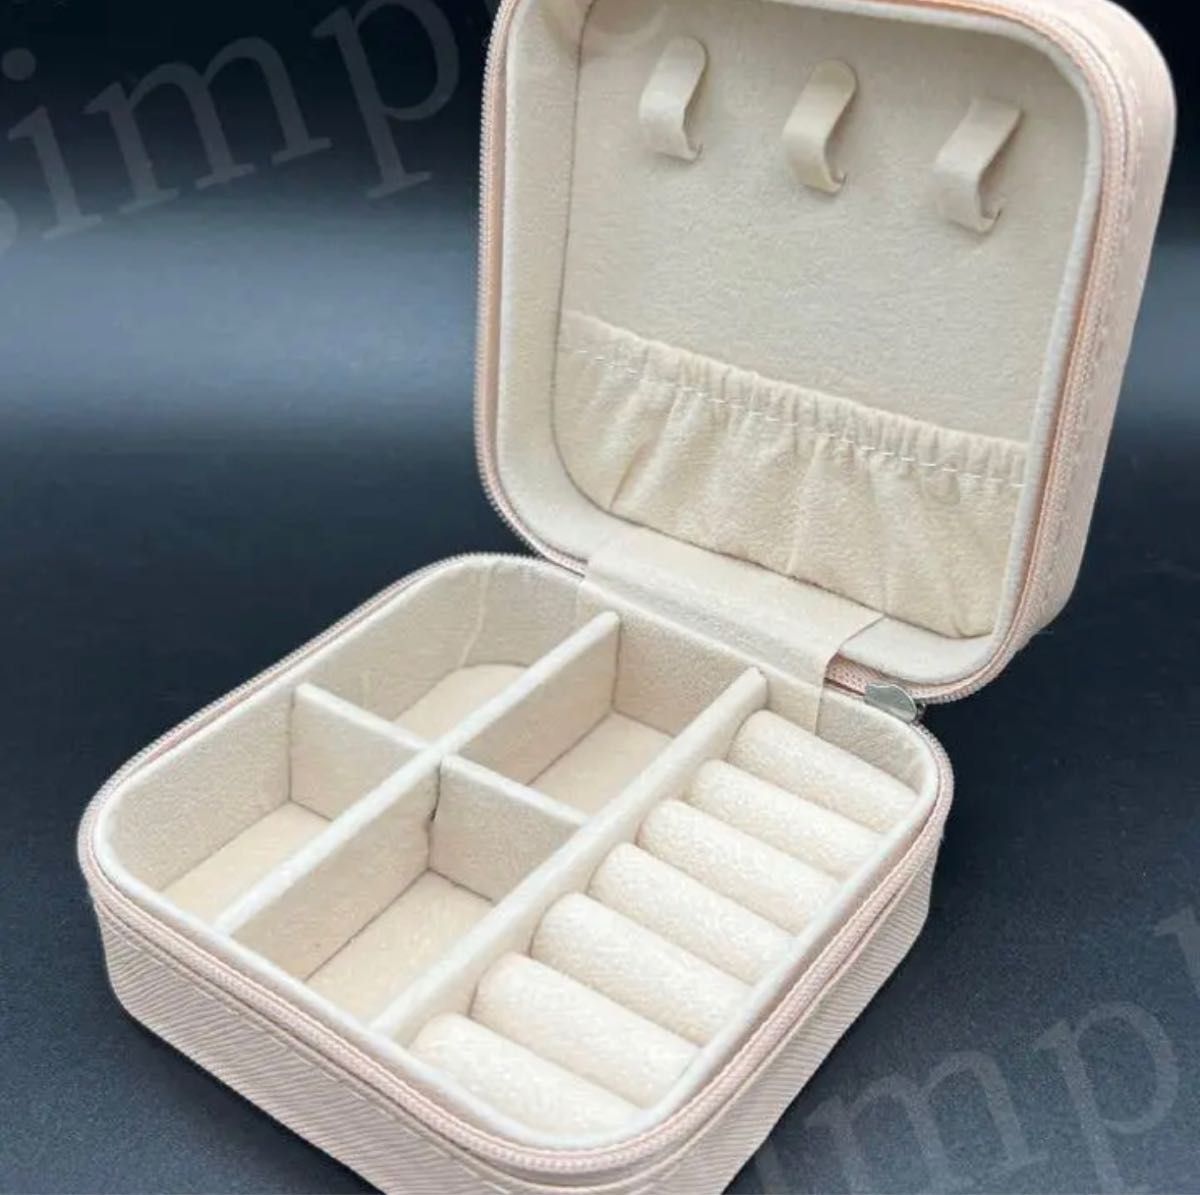 【ホワイト】 ジュエリーボックス 携帯用 アクセサリーケース 宝石箱 収納ケース 化粧品収納ボックス コスメ収納